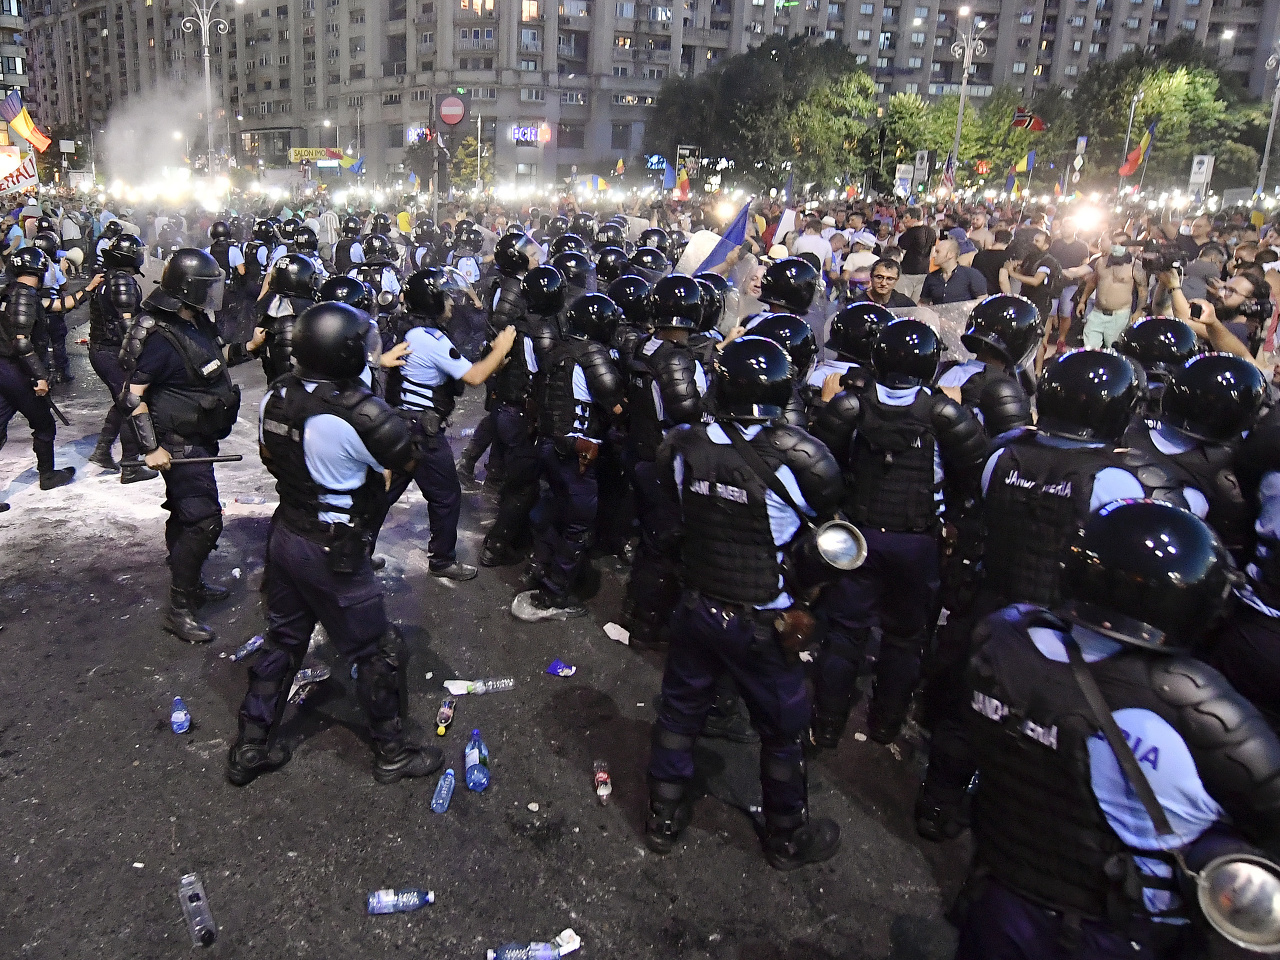 V Rumunsku prebiehajú masívne protesty.